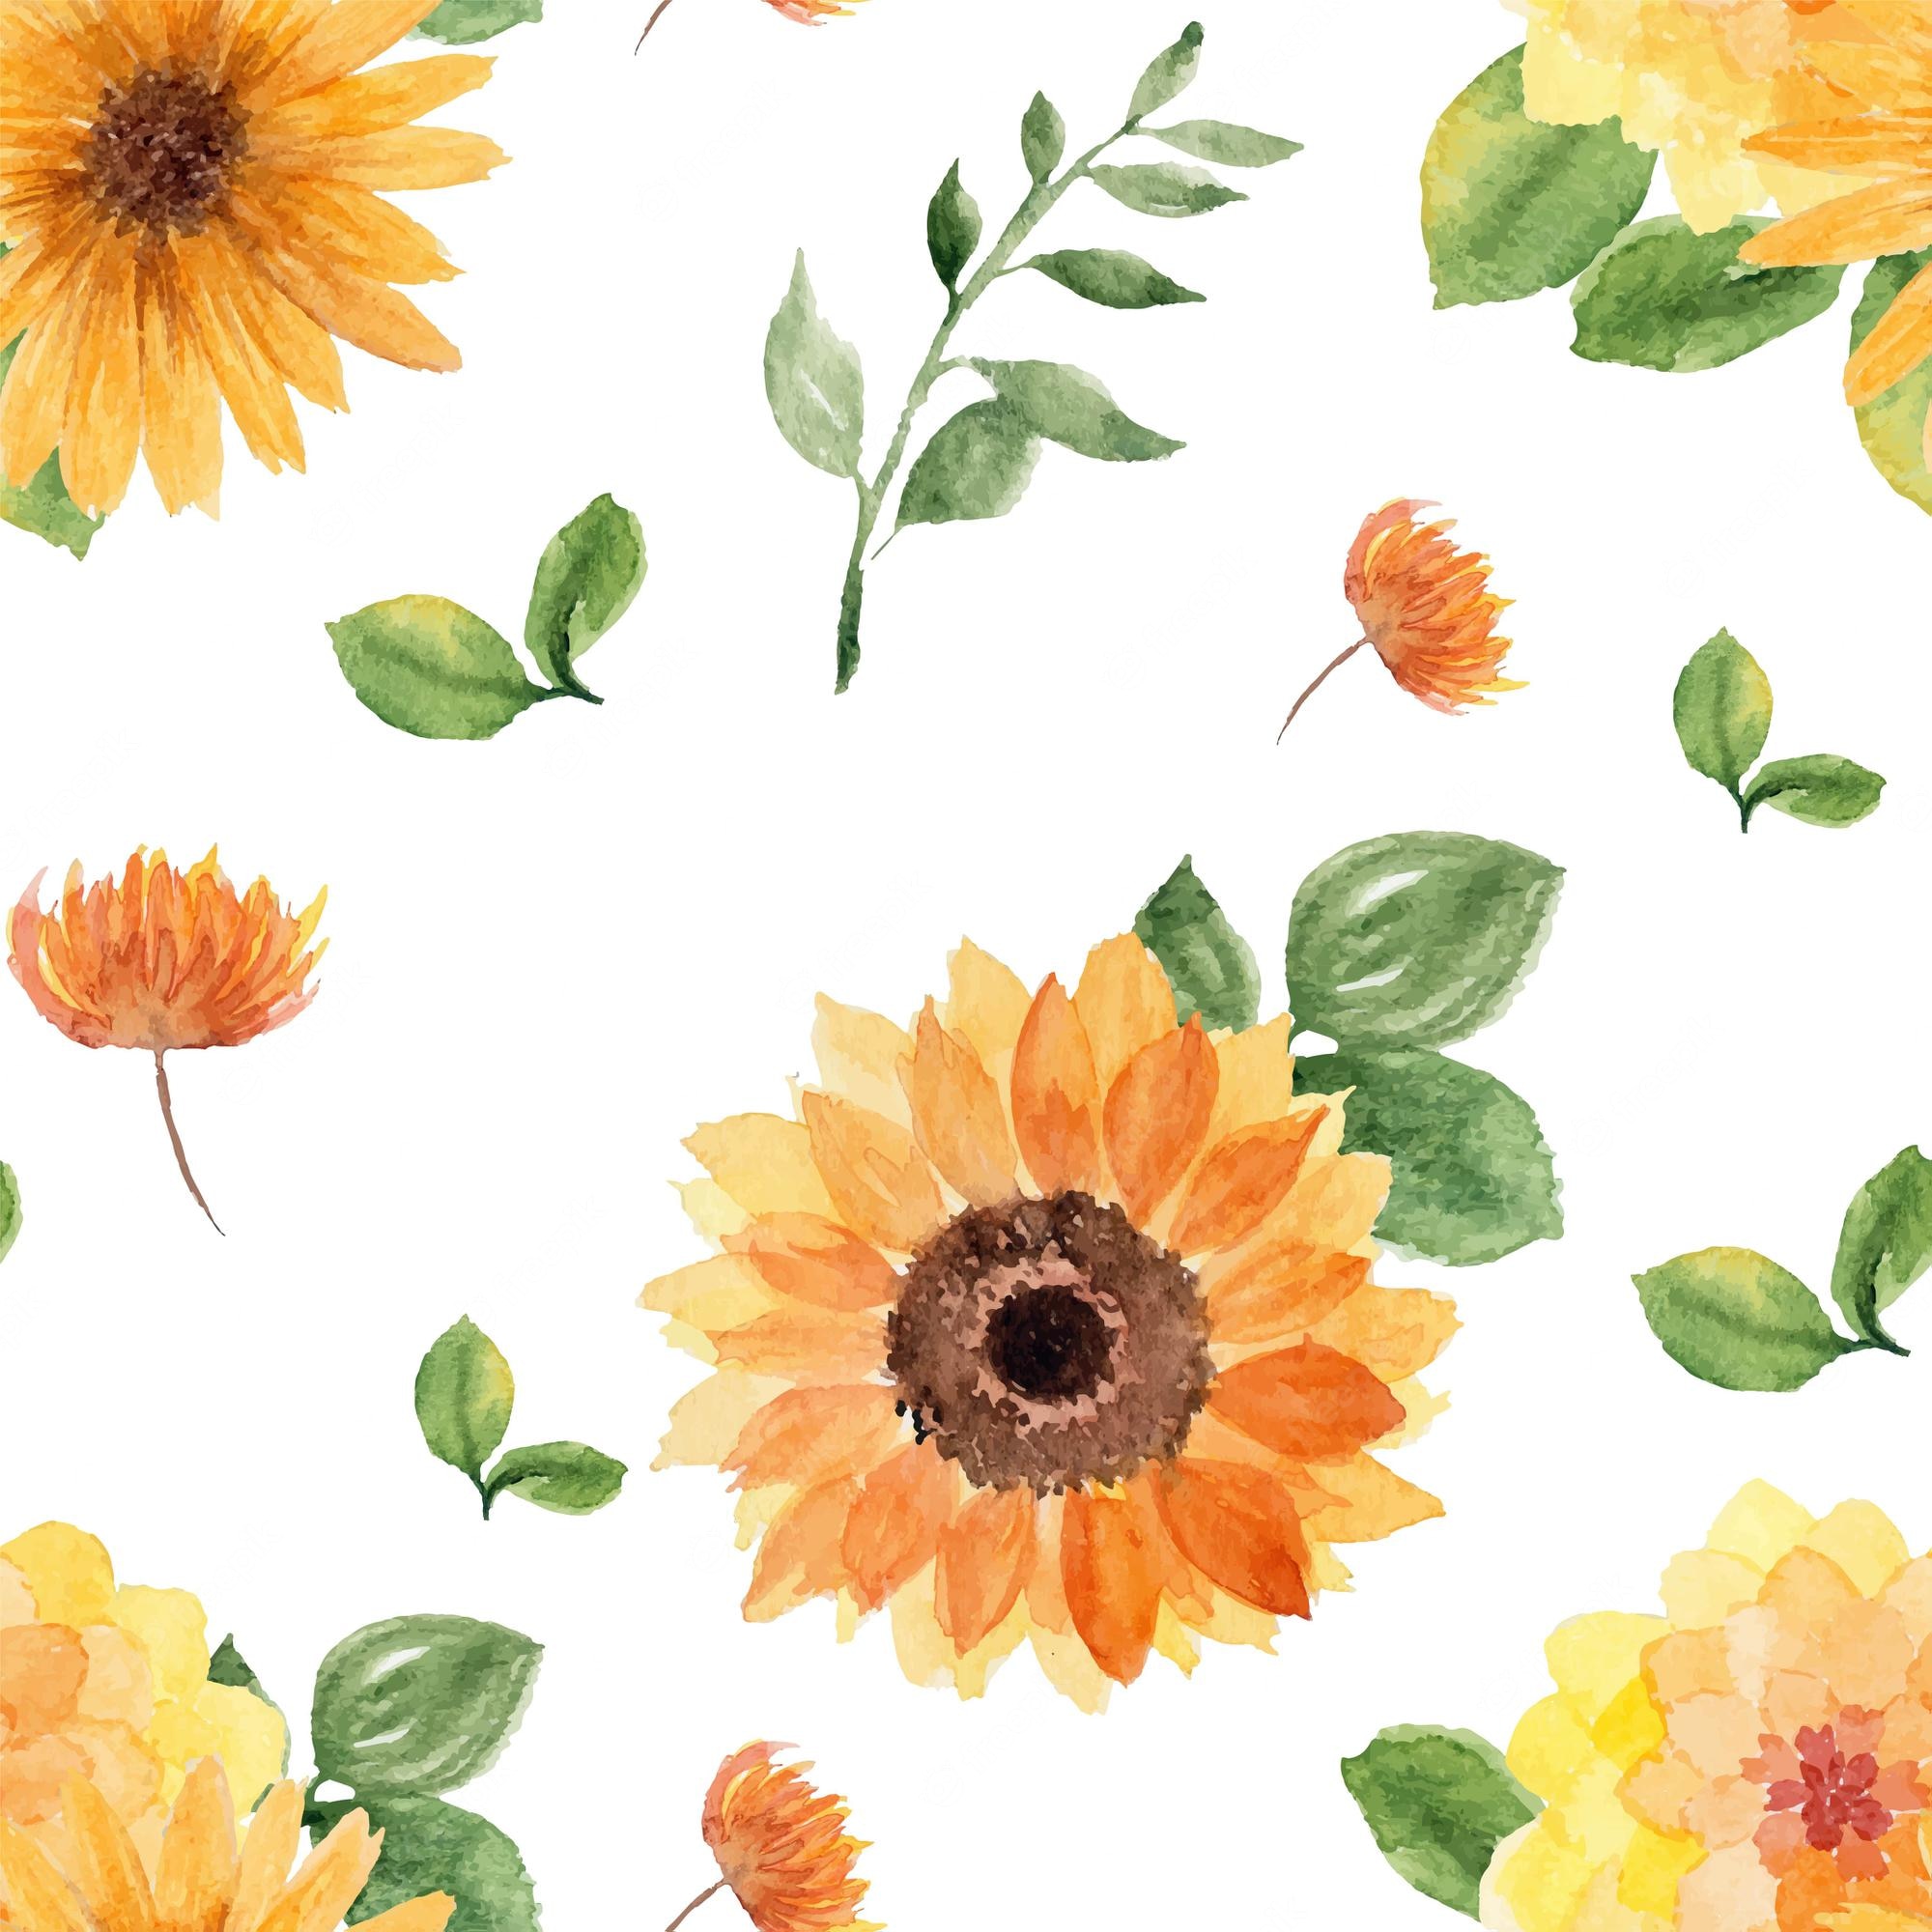 Sunflower Laptop Background